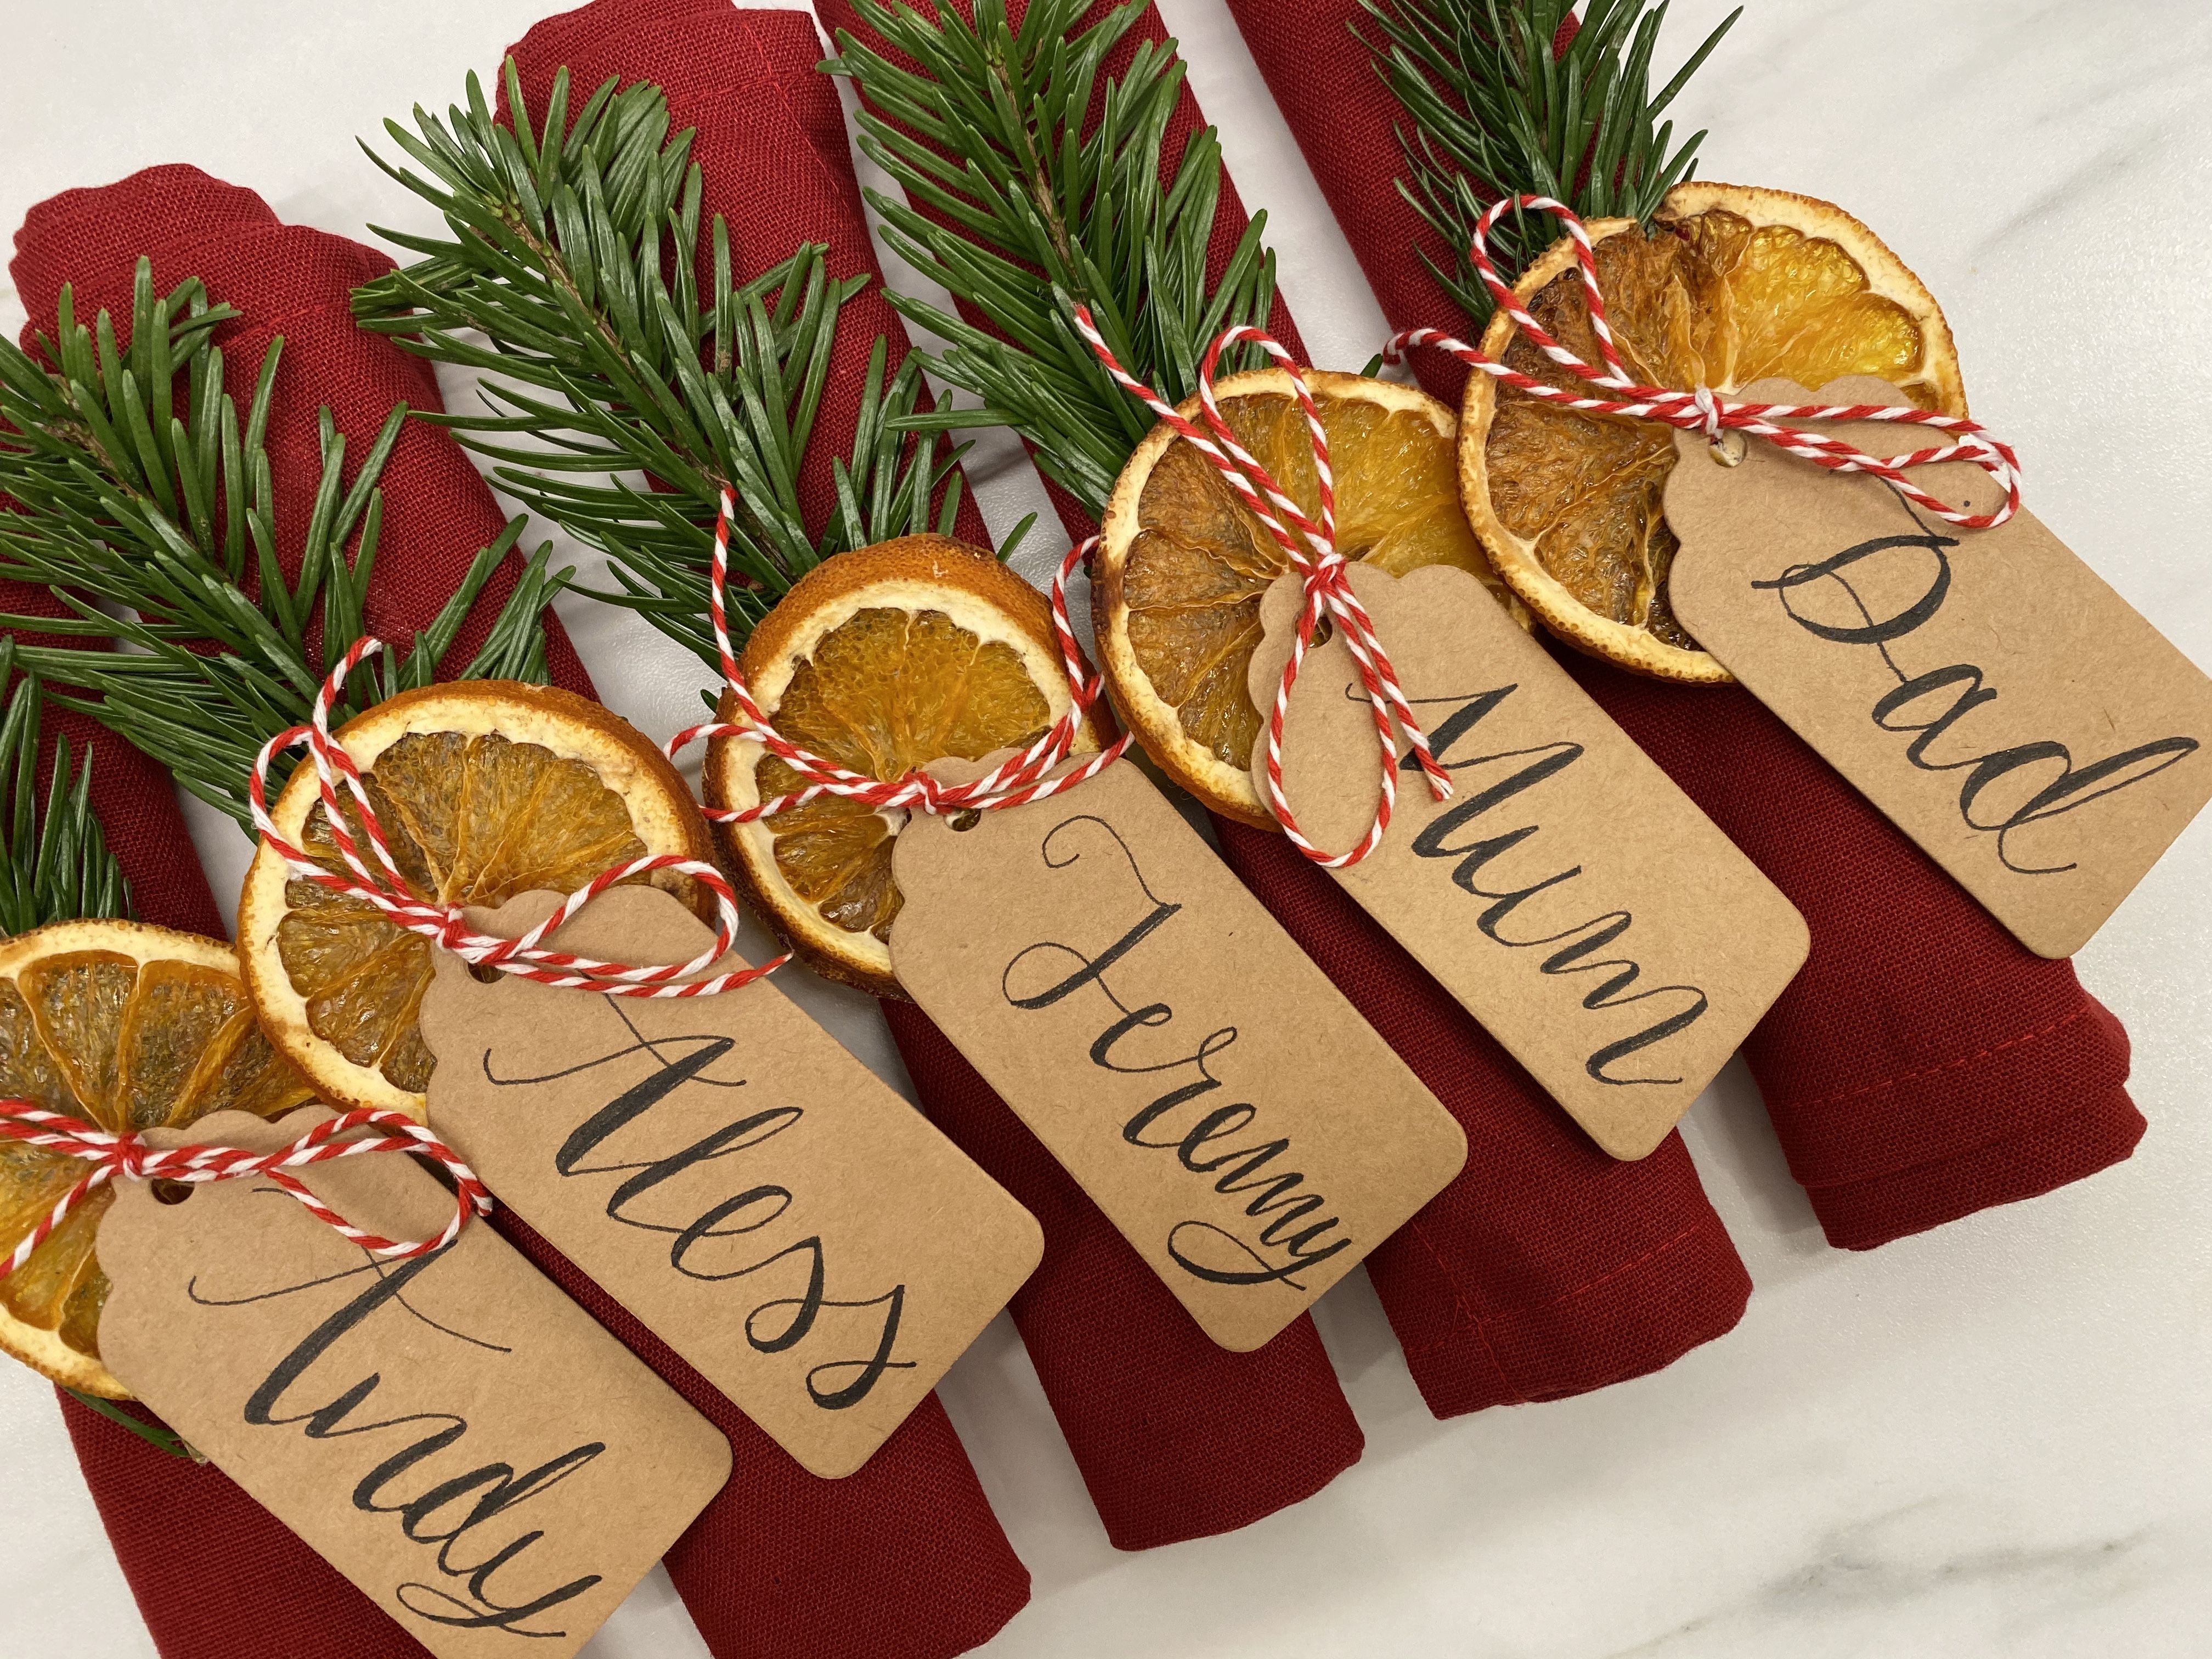 Rami di pino, arancia ed etichetta per segnaposto natalizio.